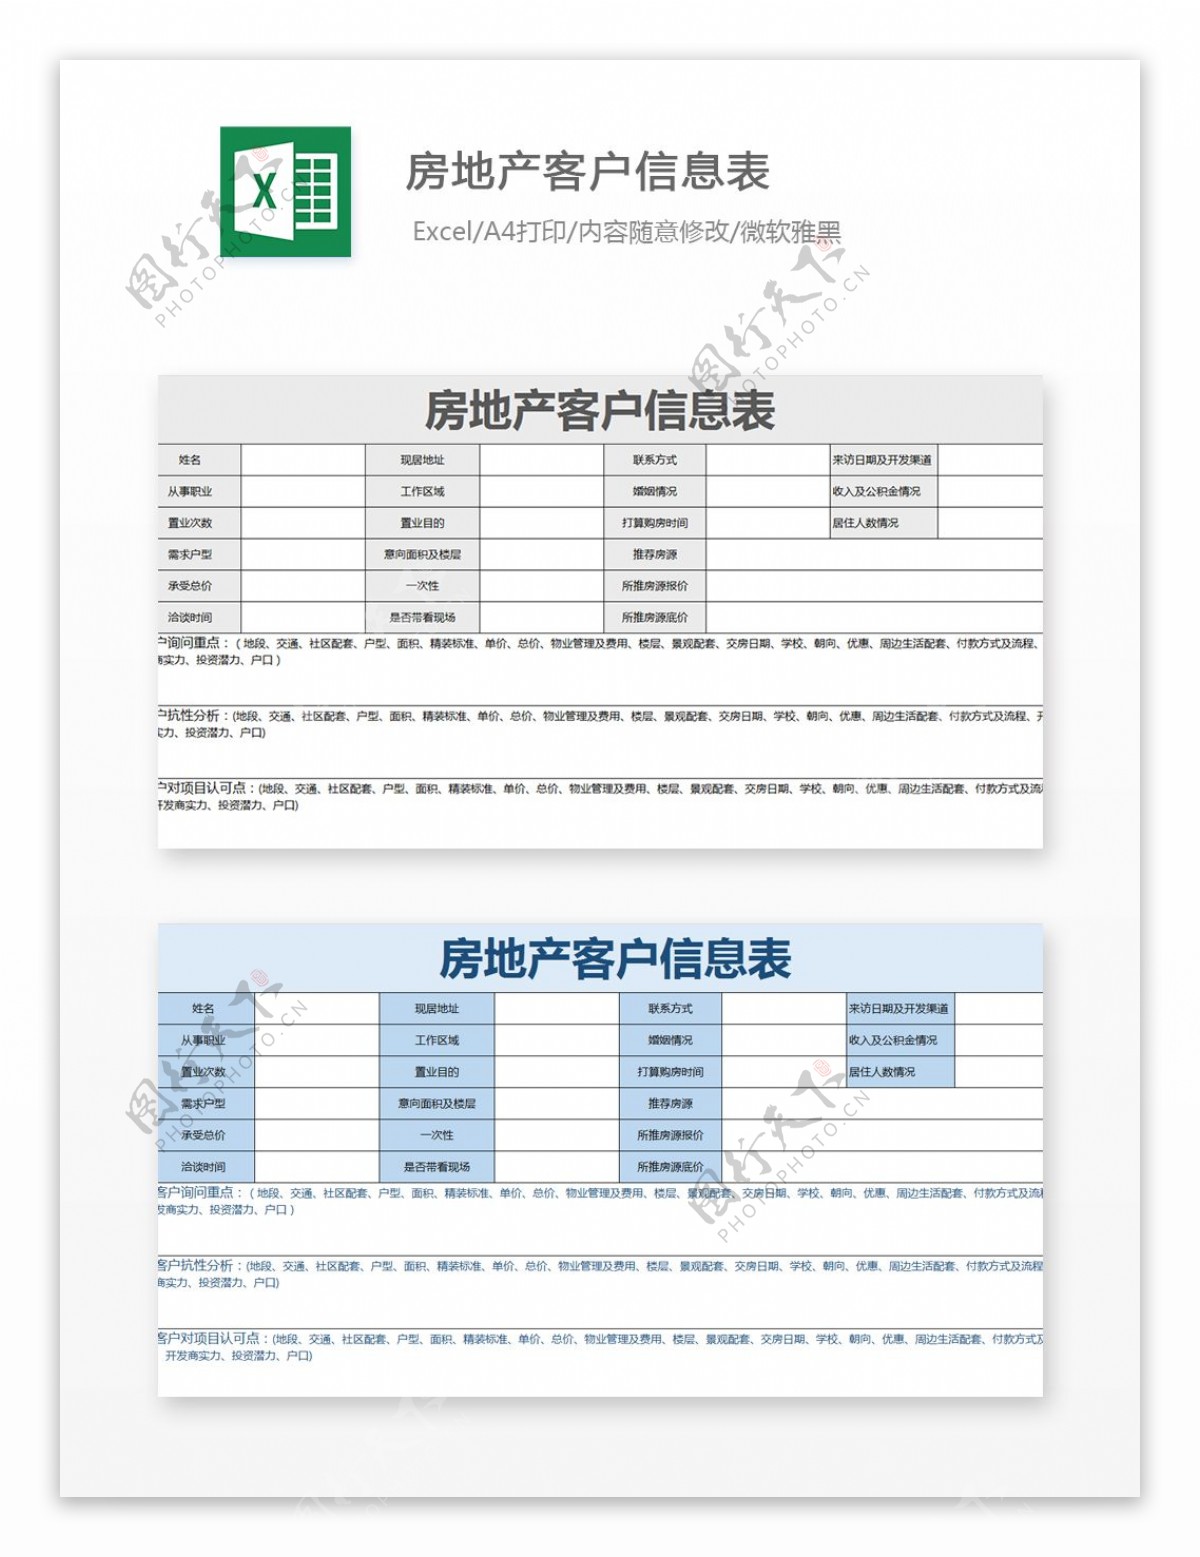 房地产客户信息表Excel文档